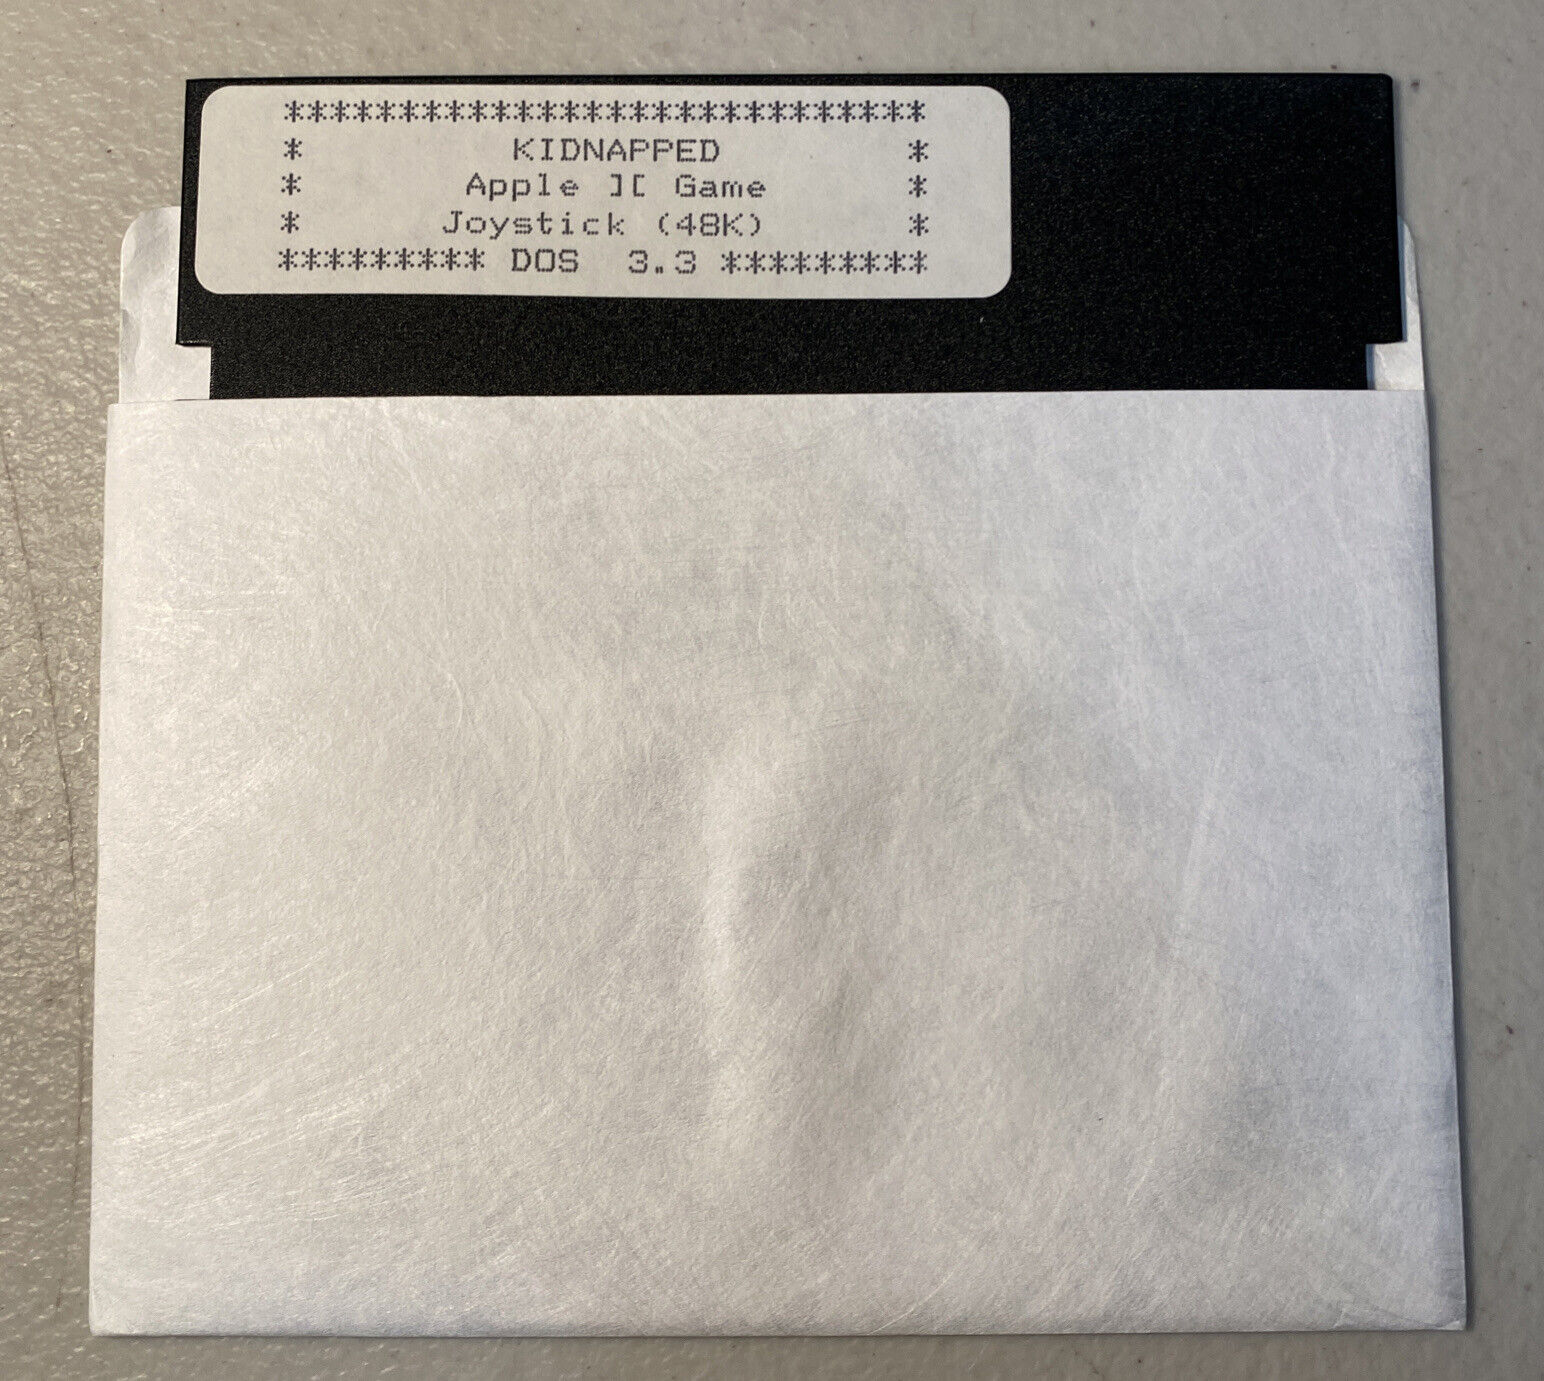 Kidnapped Joystick Game Dos 3.3 for Apple II/IIe/IIc/II+ 5.25” Floppy